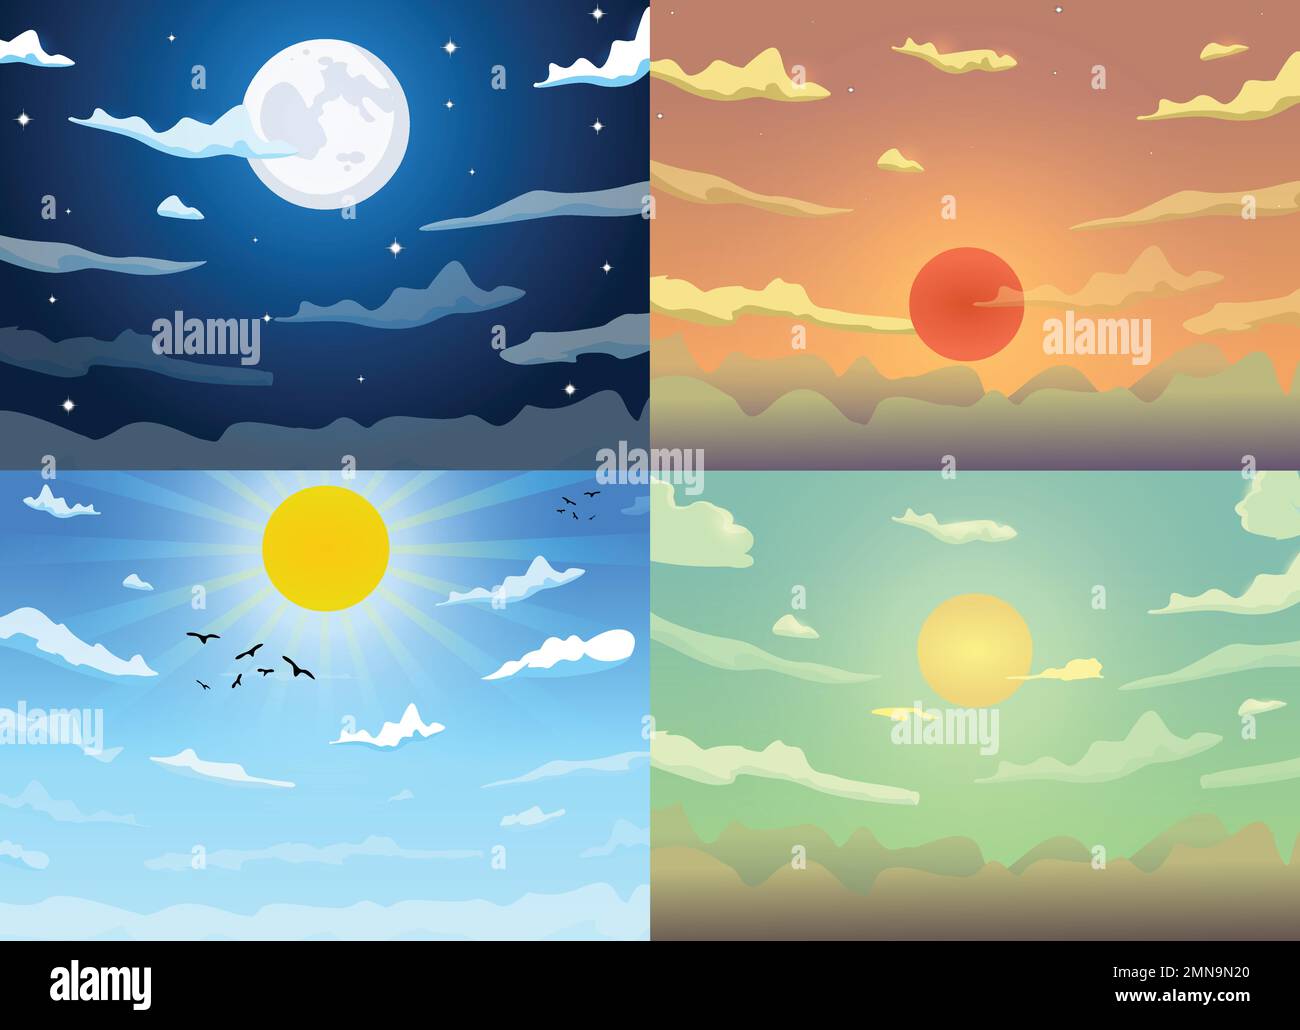 Vektorvariante Karikatur Himmel Morgen, Tag, Abend und Nacht mit Wolken, Sonne und Mondhintergrund. Stock Vektor